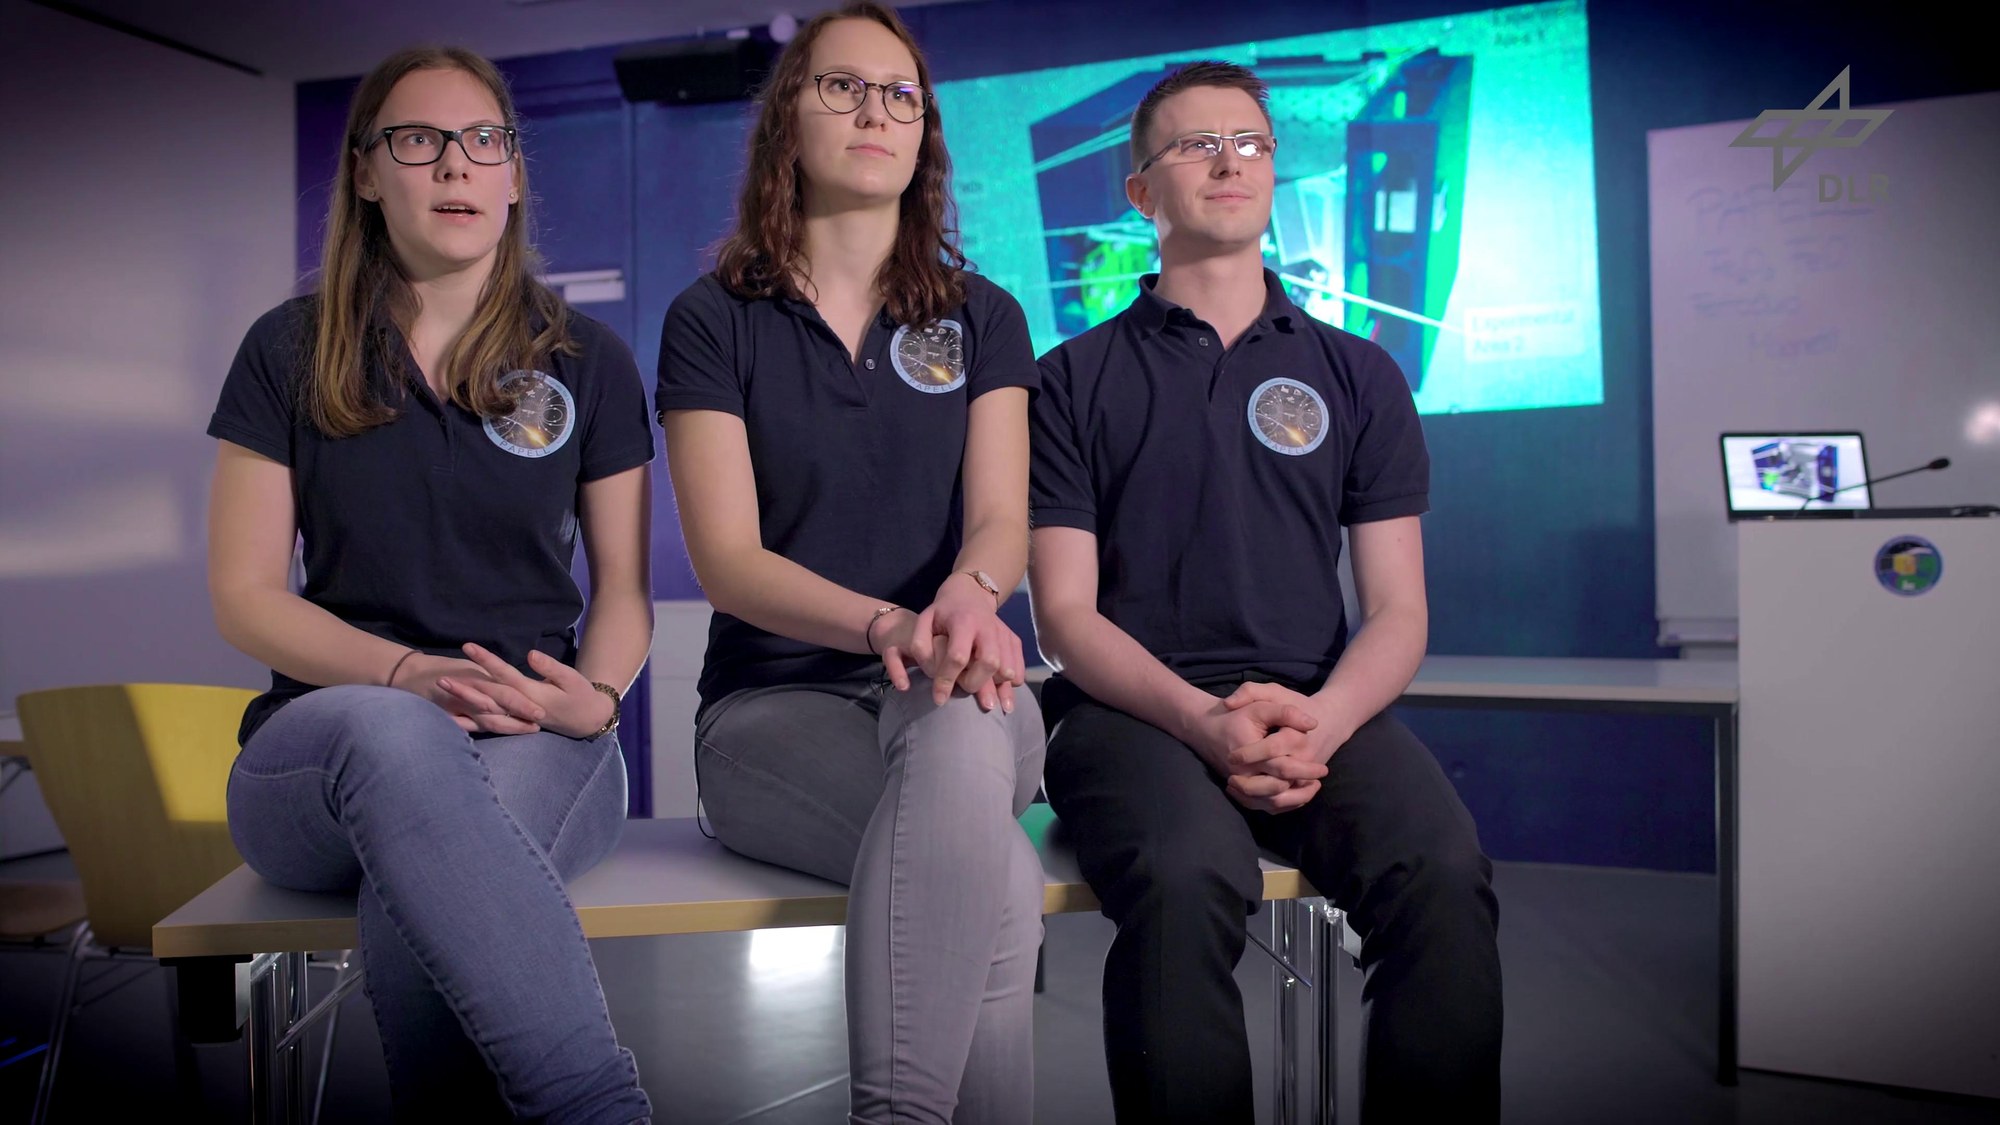 Standbild - Video: Überflieger-Studierendenexperimente auf der ISS (Papell & Arise)